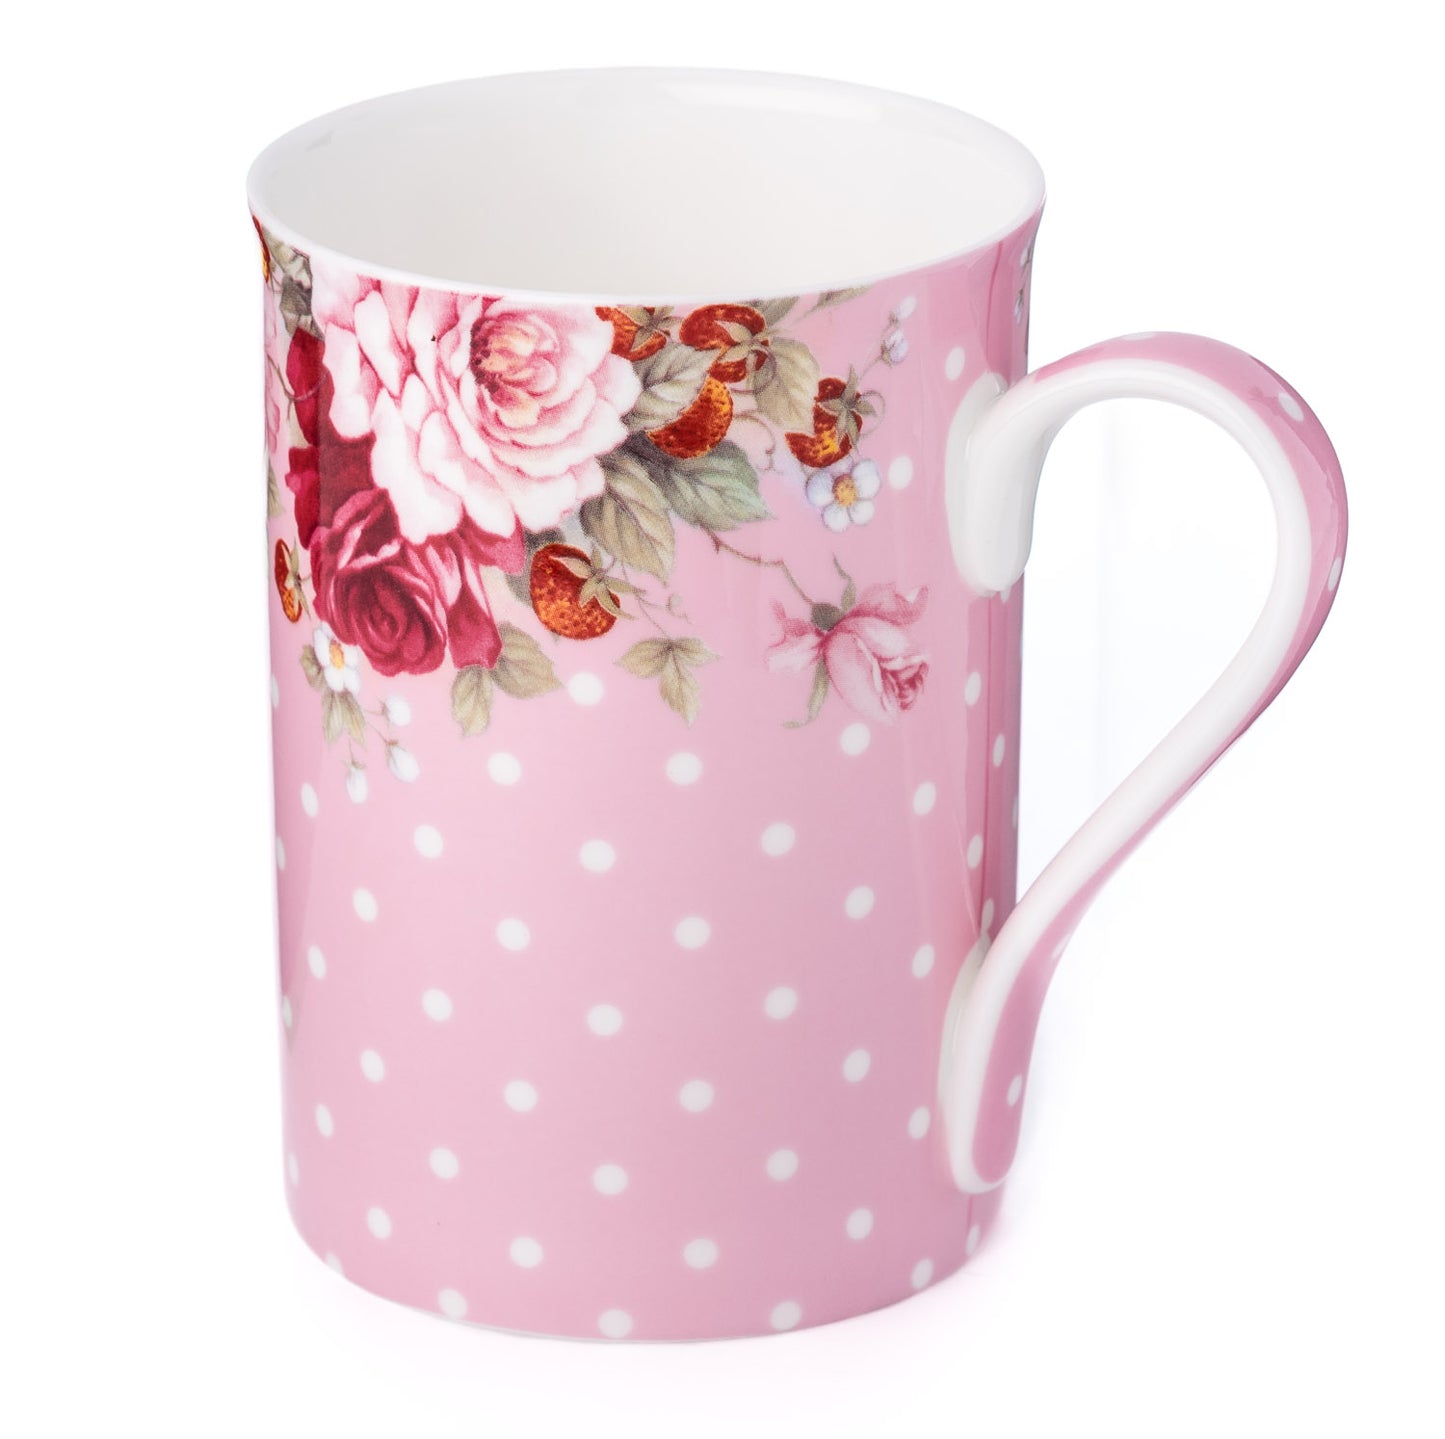 'Dots & Roses Pink' Classico Mug